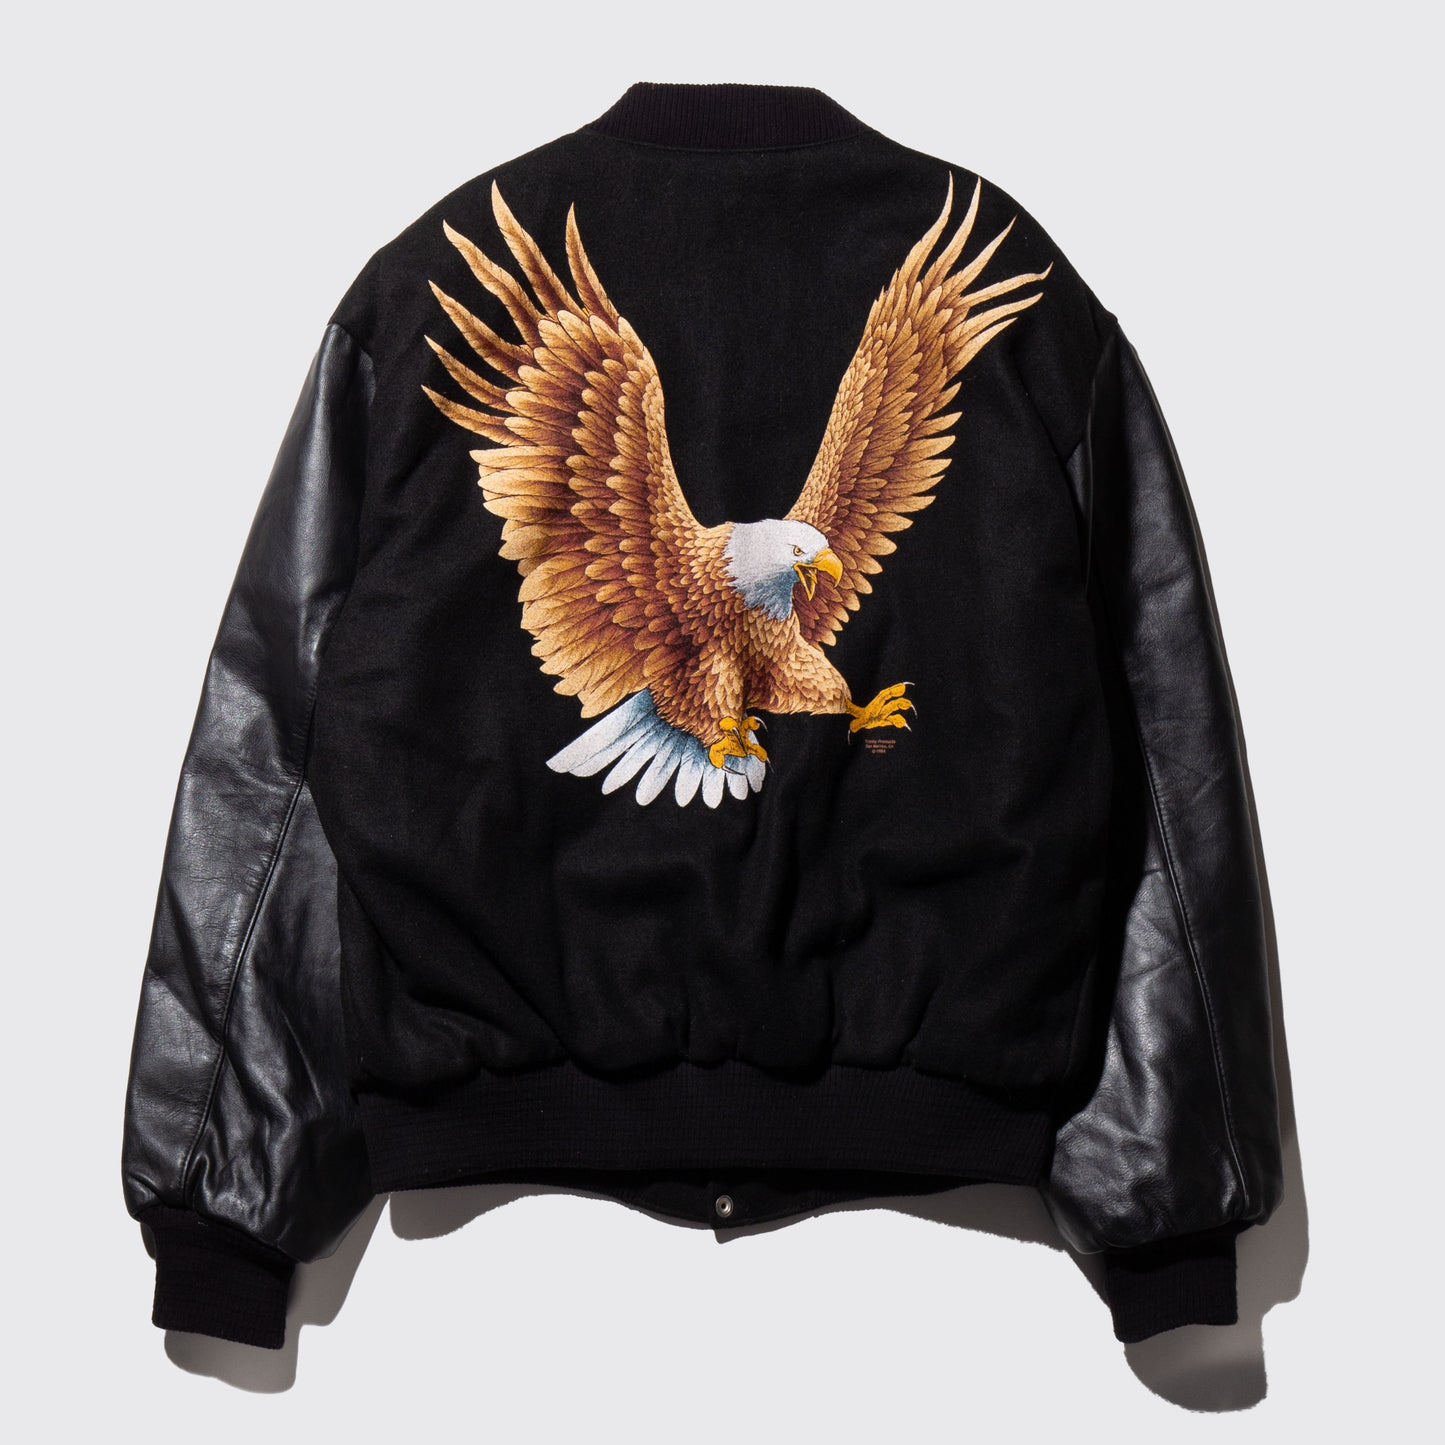 vintage eagle varsity jacket